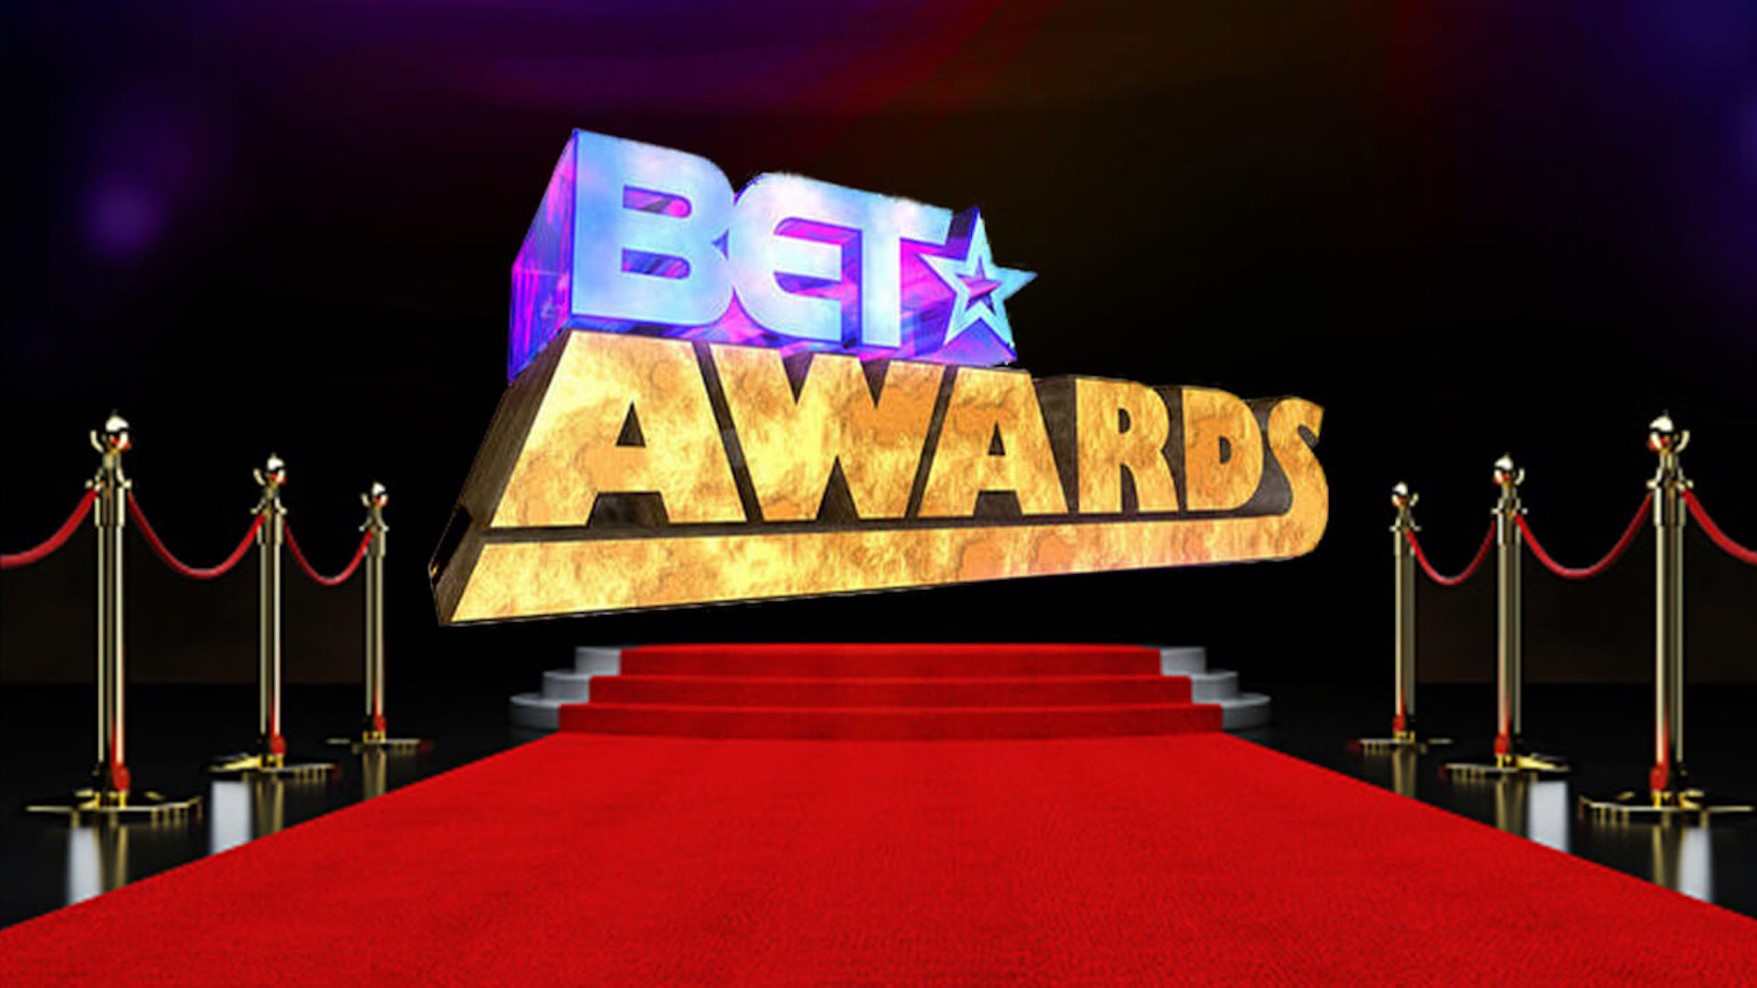 Bet Awards